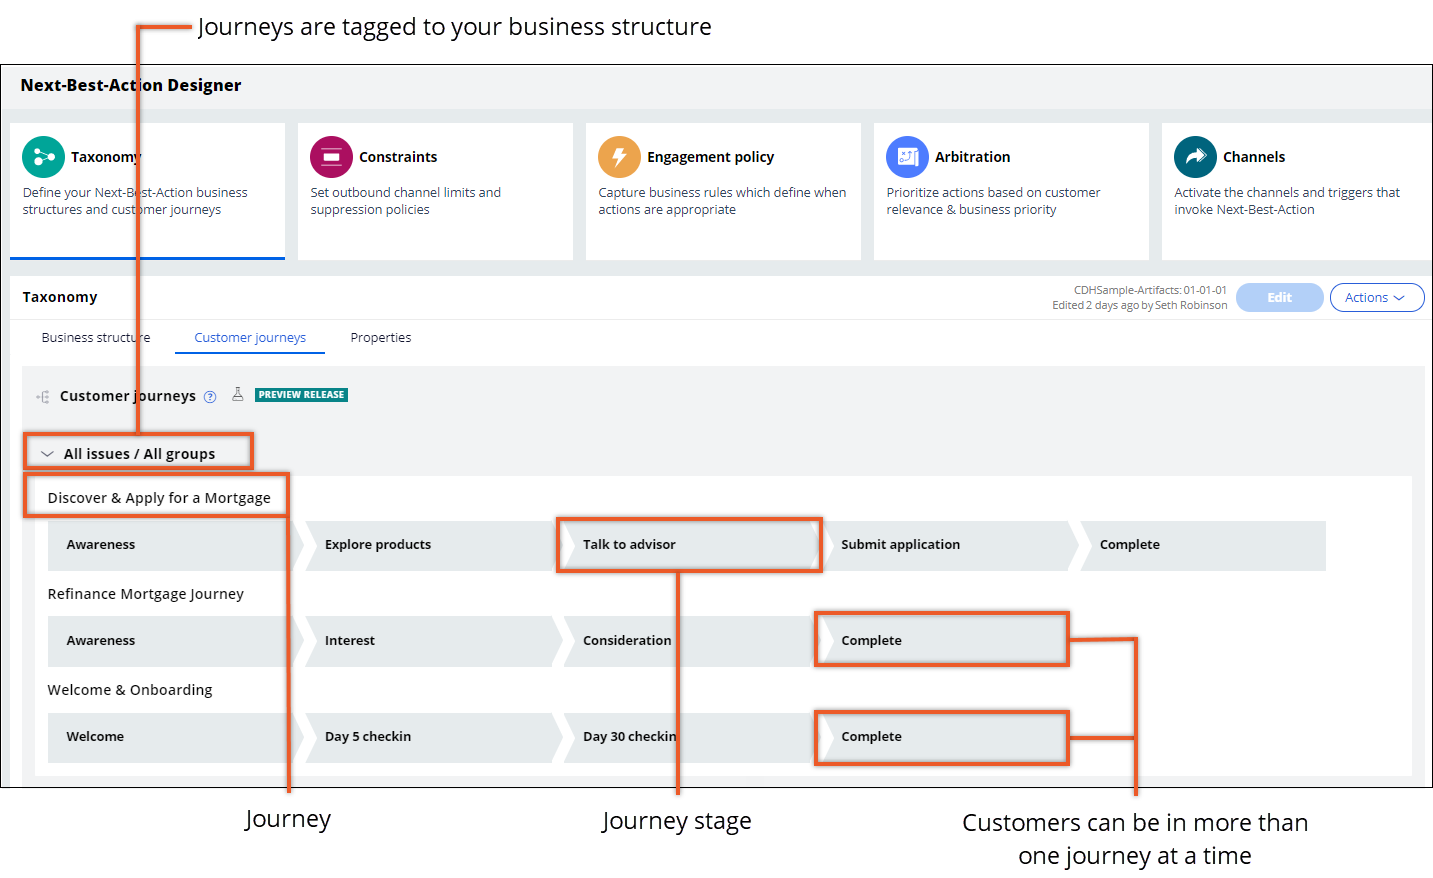 View of customer journeys in Next-best-Action Designer